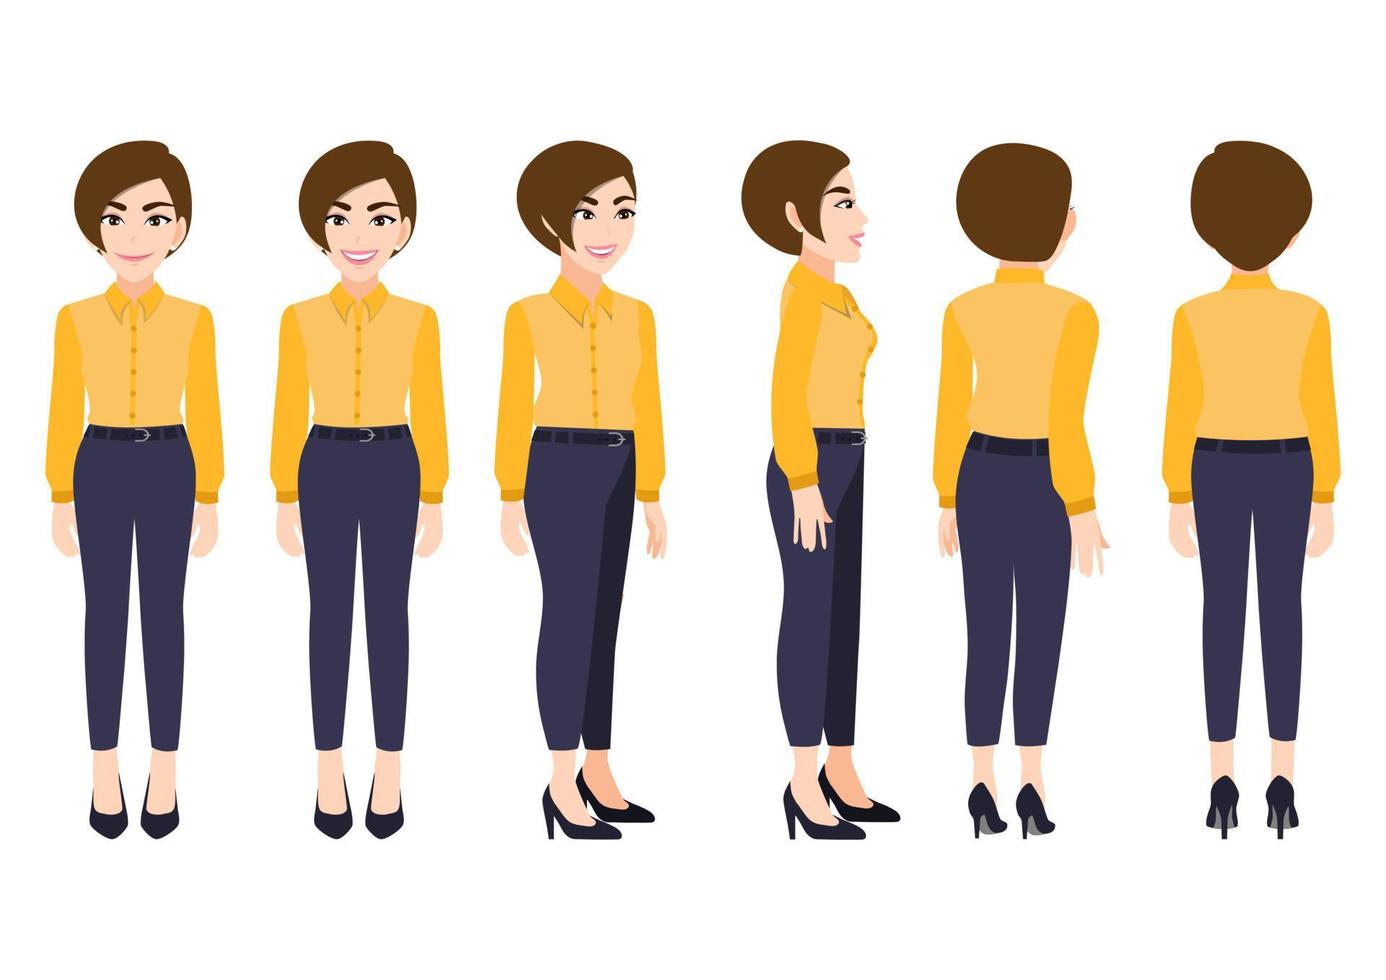 seriefigur med affärskvinna i smart skjorta för animering. framsida, sida, baksida, 3-4 vykaraktär. platt vektorillustration. vektor